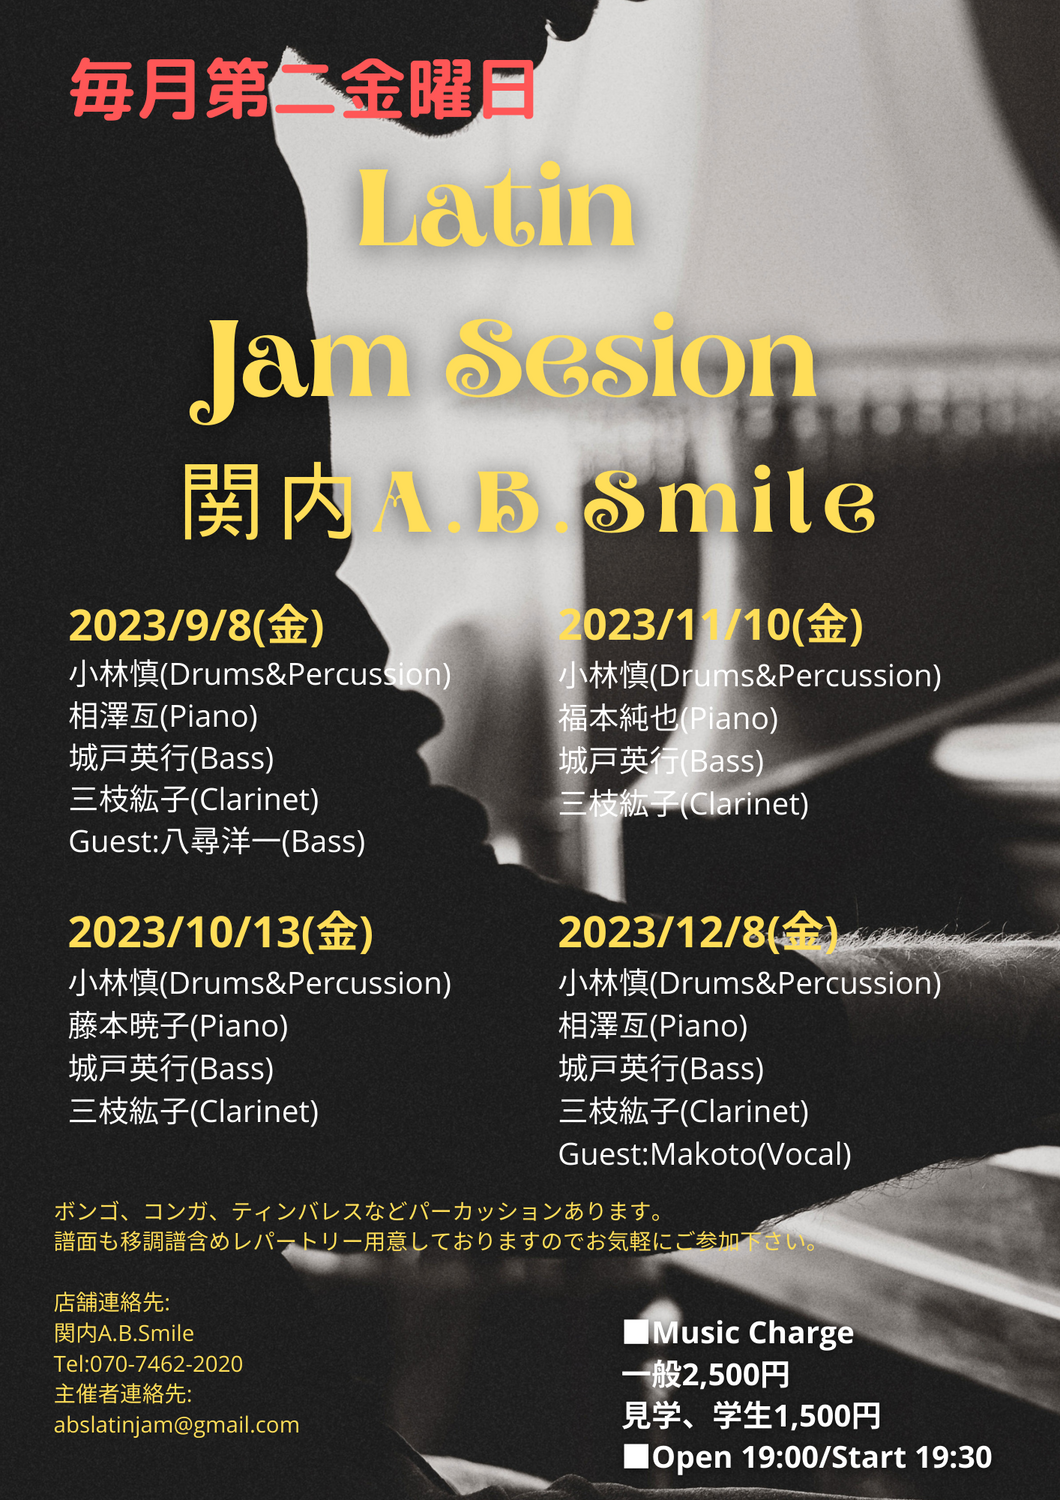 2023/10/13(金)「Latin Jam Session」 @ 関内A.B.Smile